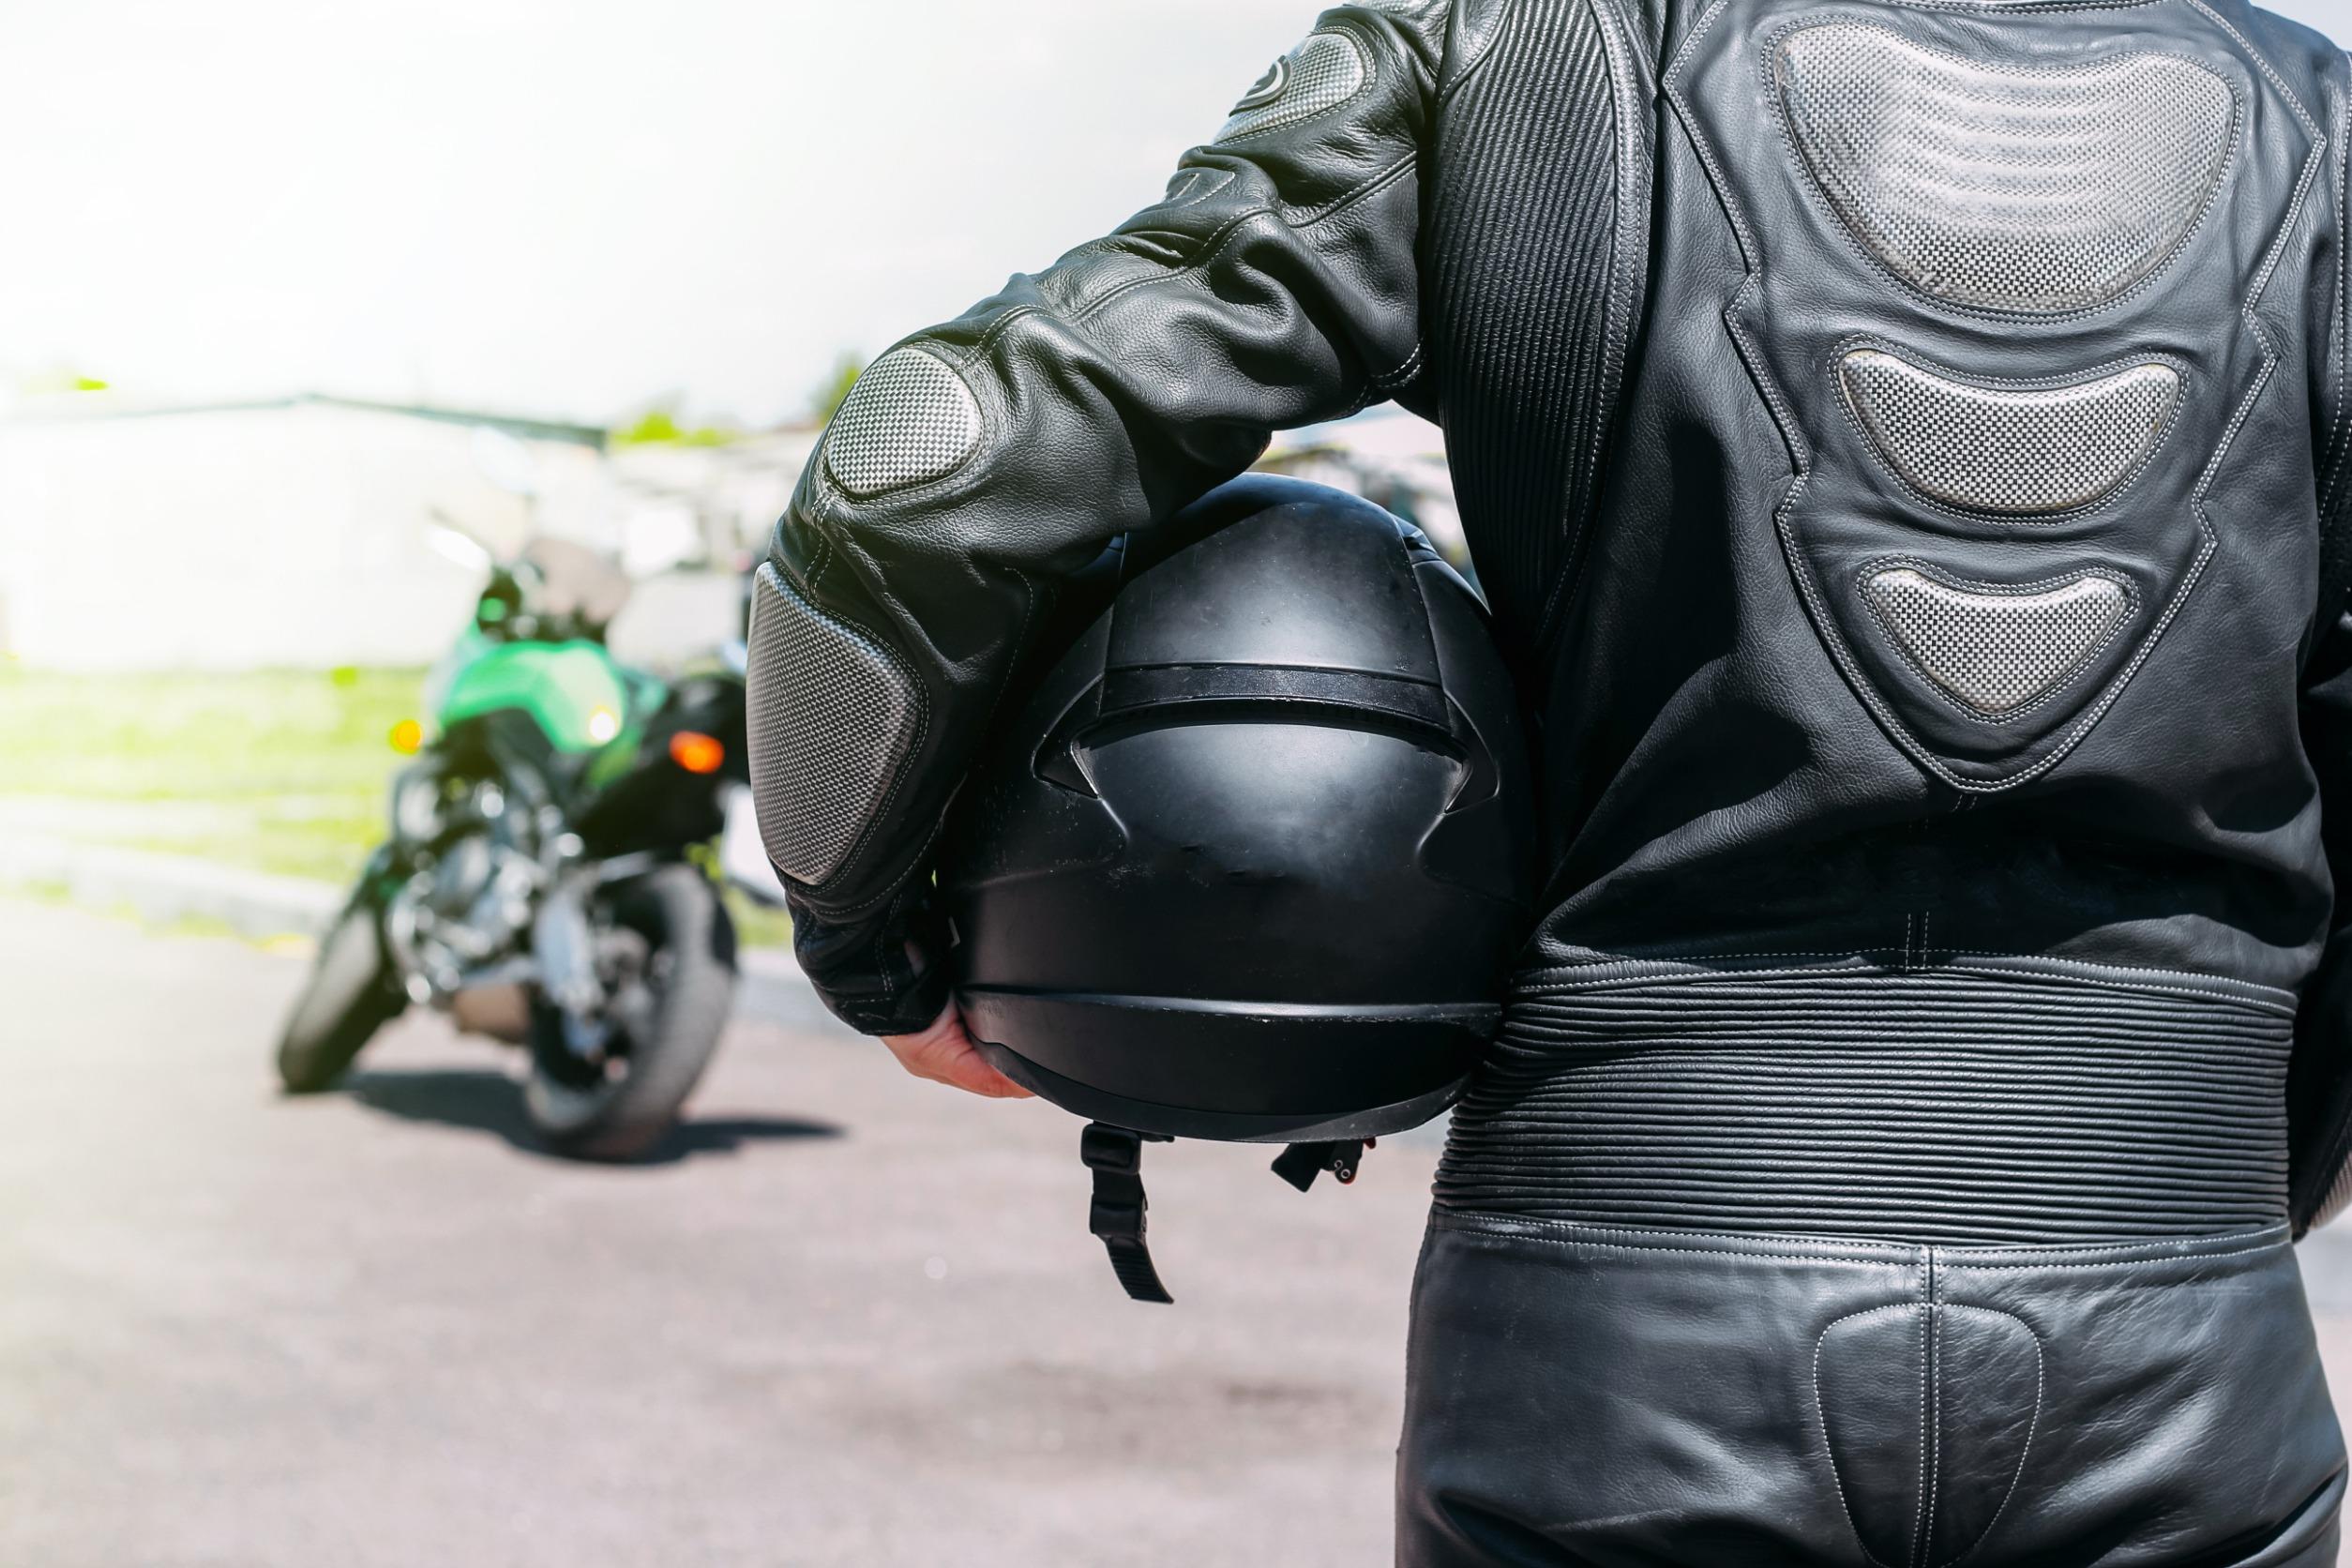 Come scegliere gli accessori moto giusti per la sicurezza e la protezione